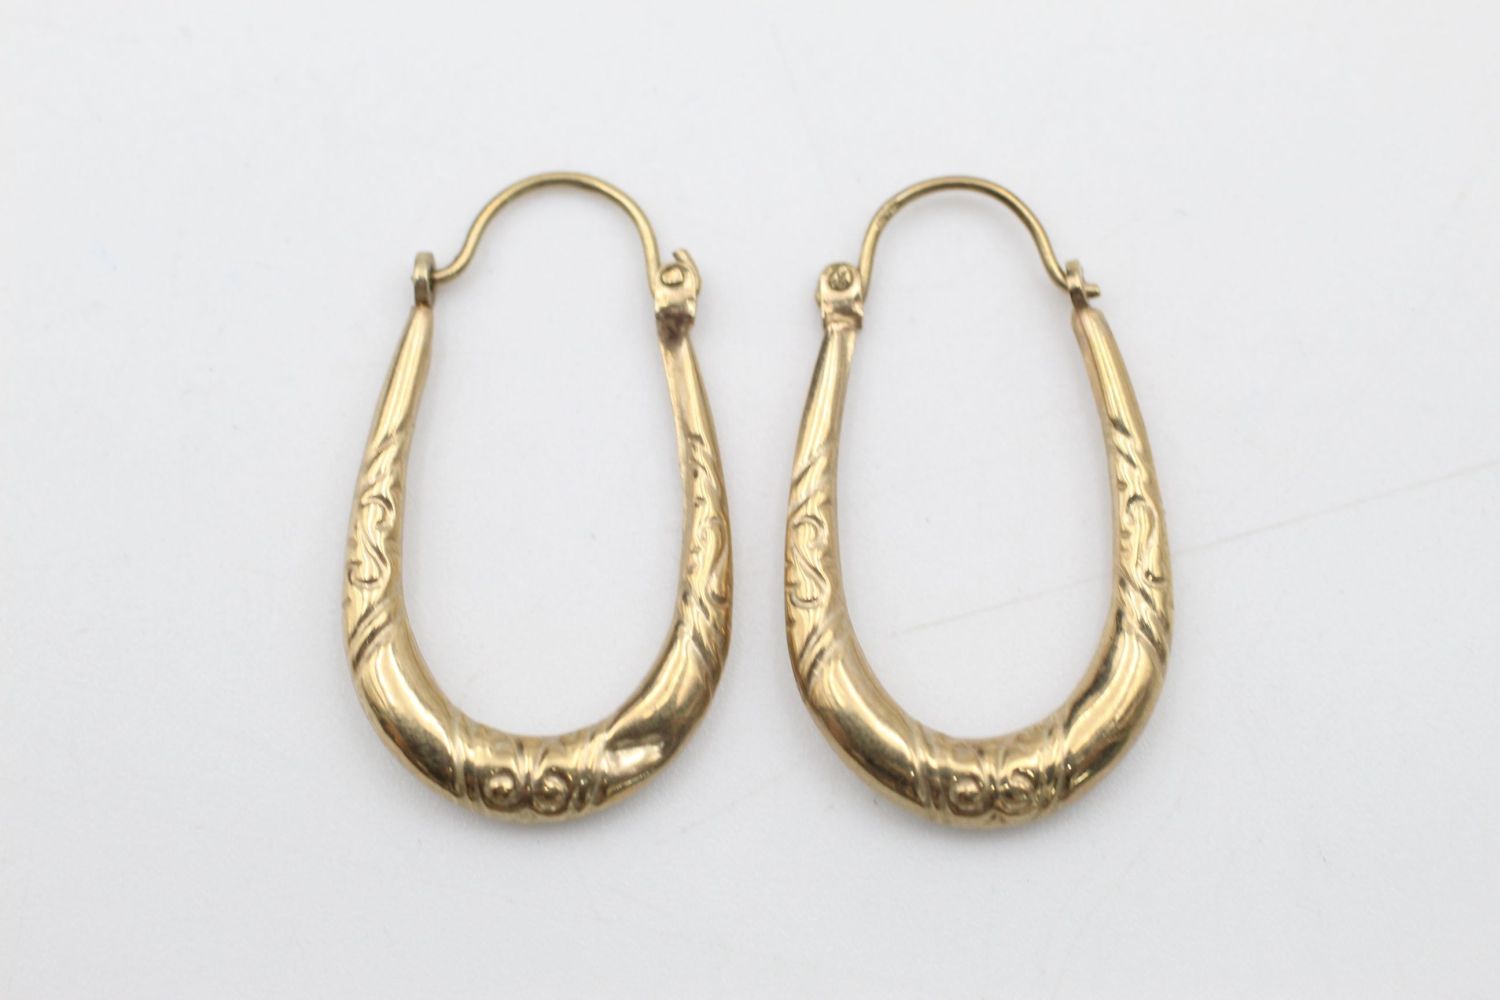 2 x 9ct Gold hoop earrings inc. engraved 1.9 grams gross - Image 5 of 7